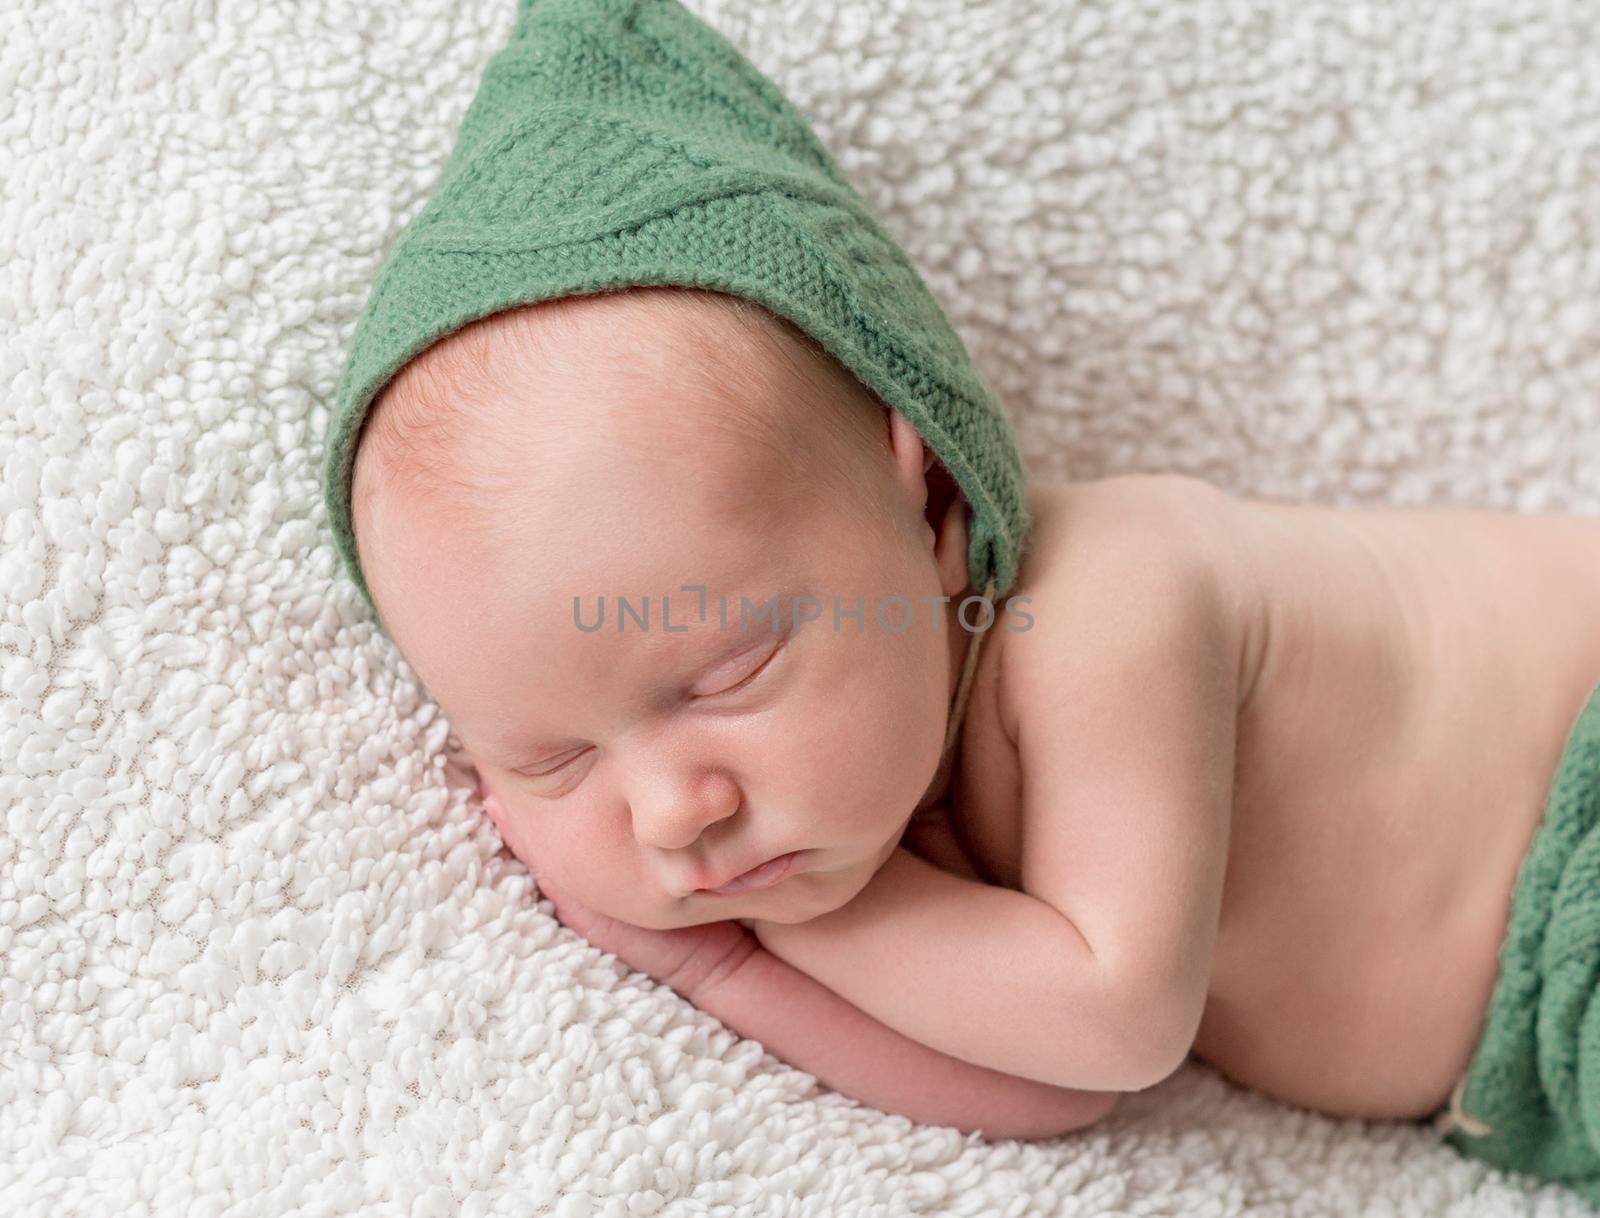 cute newborn sleeping in green elf hat and panties by tan4ikk1